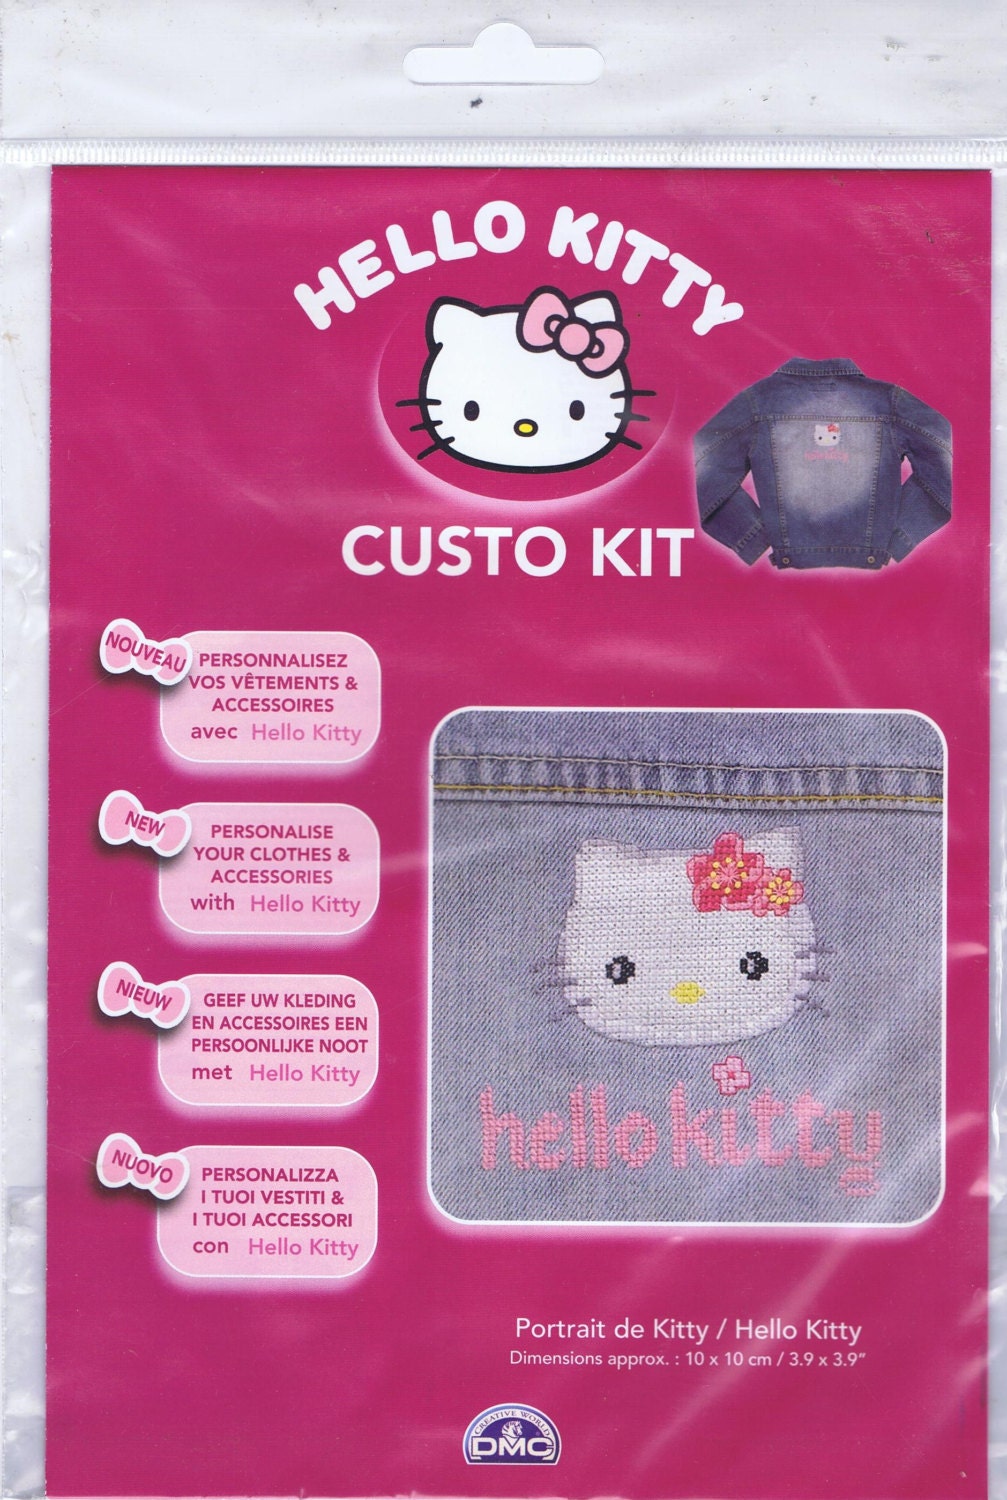 Hello Kitty Custo Cross Kit by DMC Using Waste - Etsy